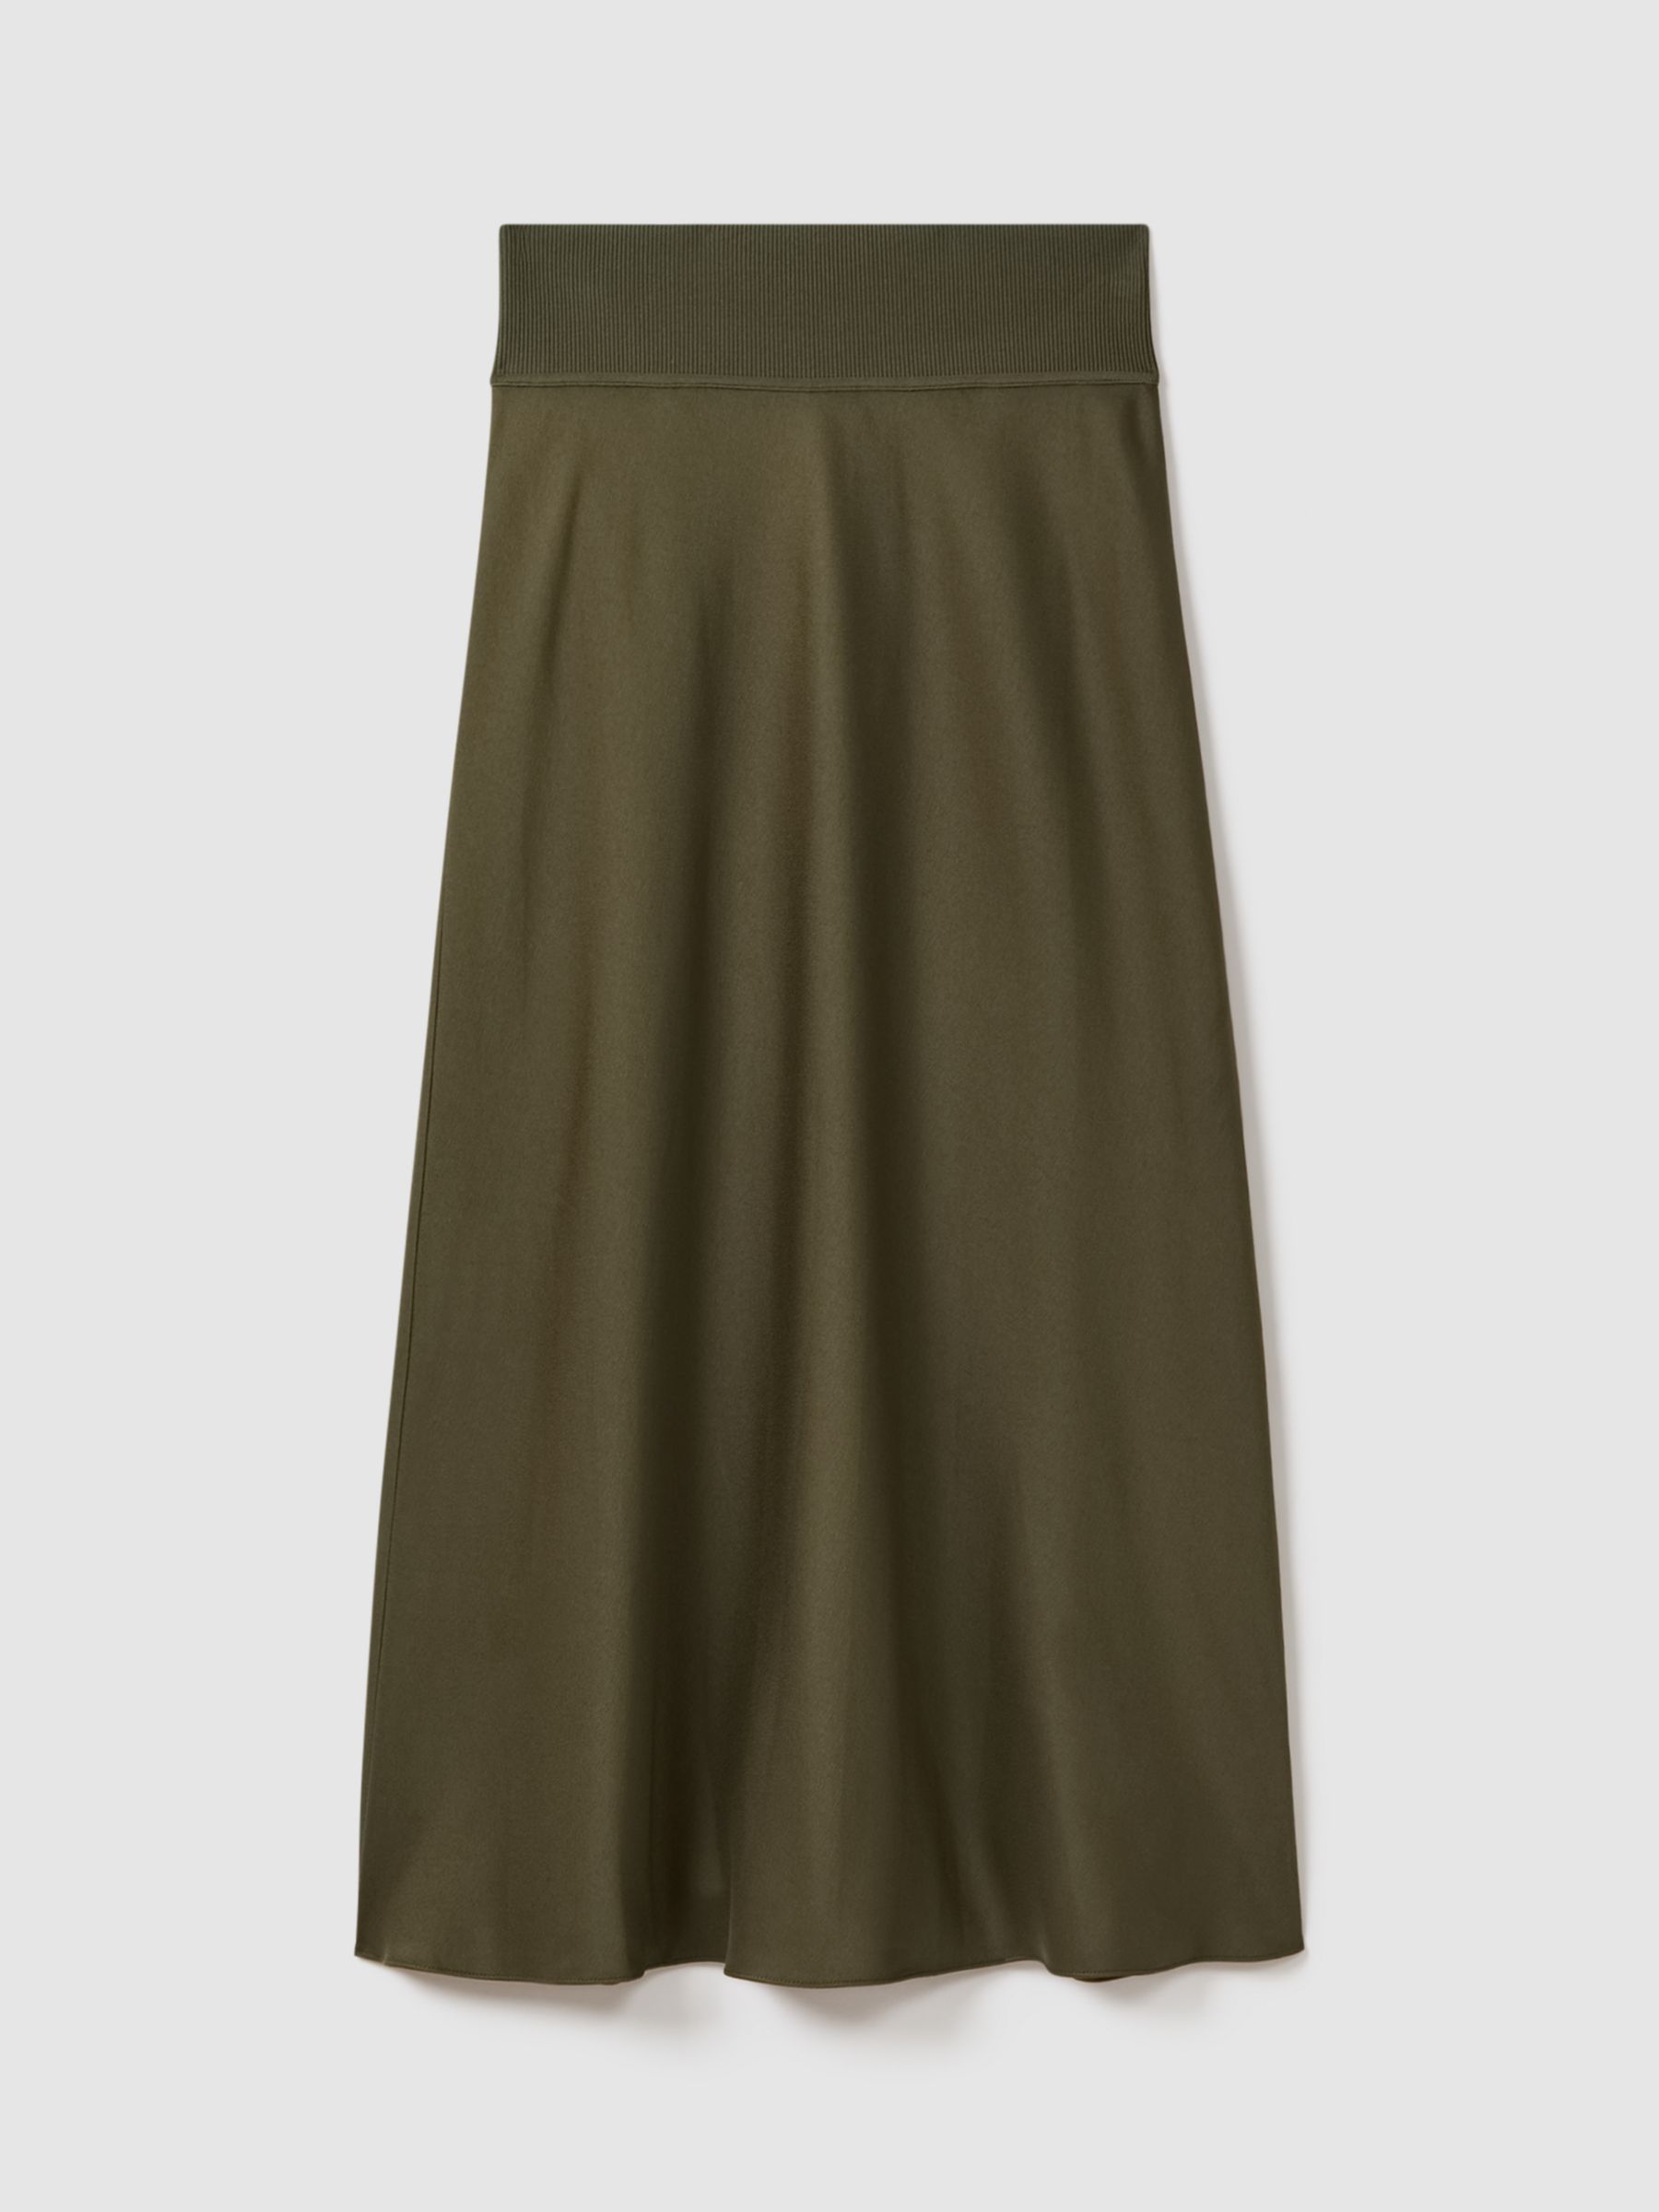 FLORERE Ribbed Waist Satin Midi Skirt, Dark Khaki, 8